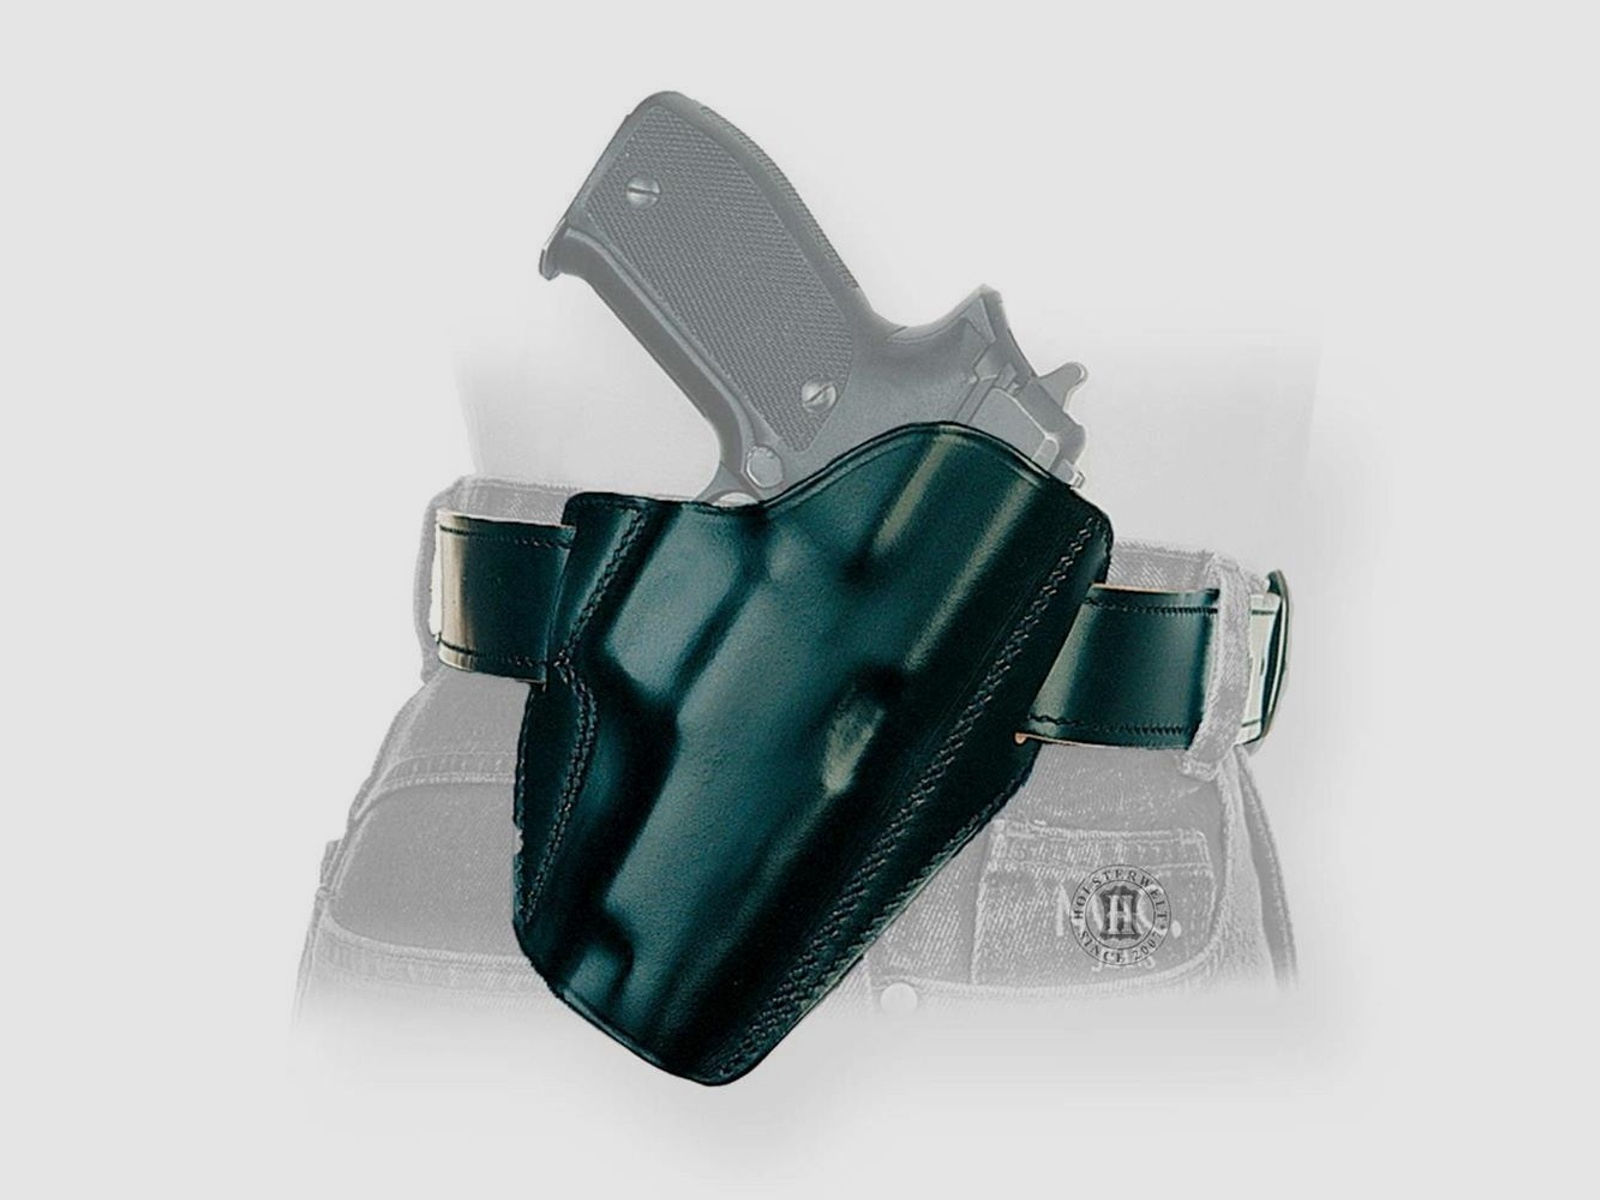 Schnellziehholster LIGHTNING "FBI" Glock 20/21 ,S&W SIGMA C, Zoraki 917-Linkshänder-Schwarz